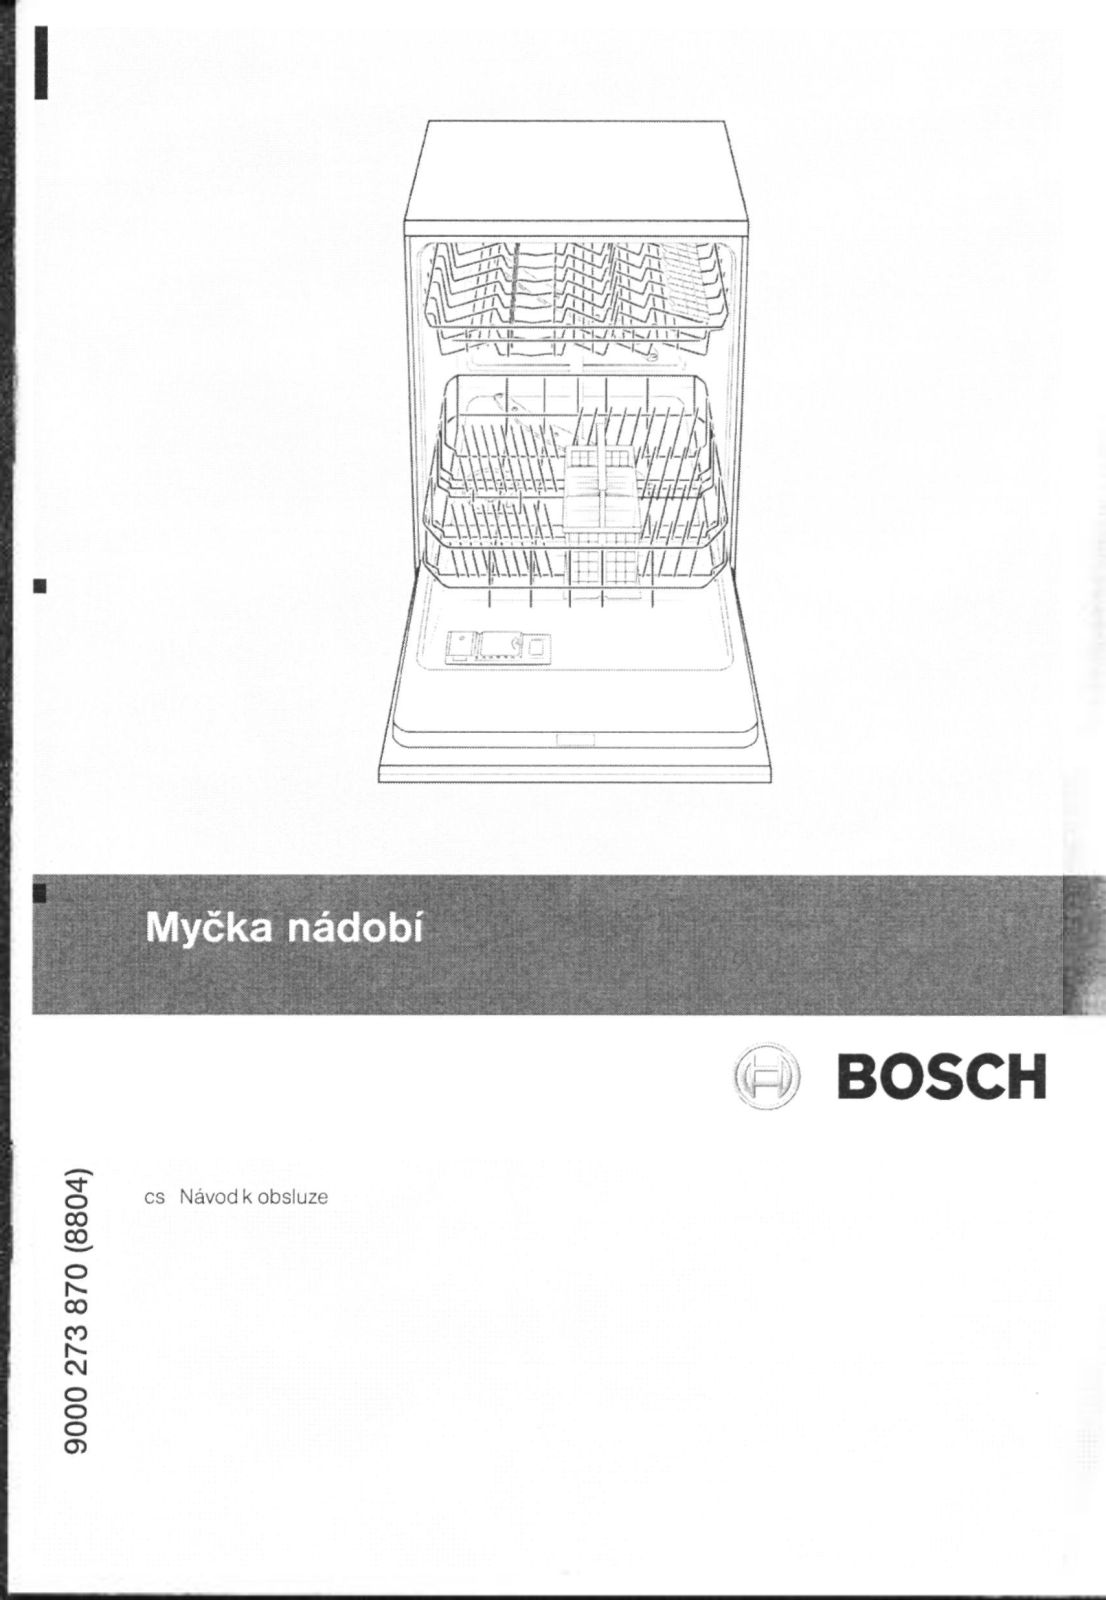 Bosch MYCKA NADOBI Manual